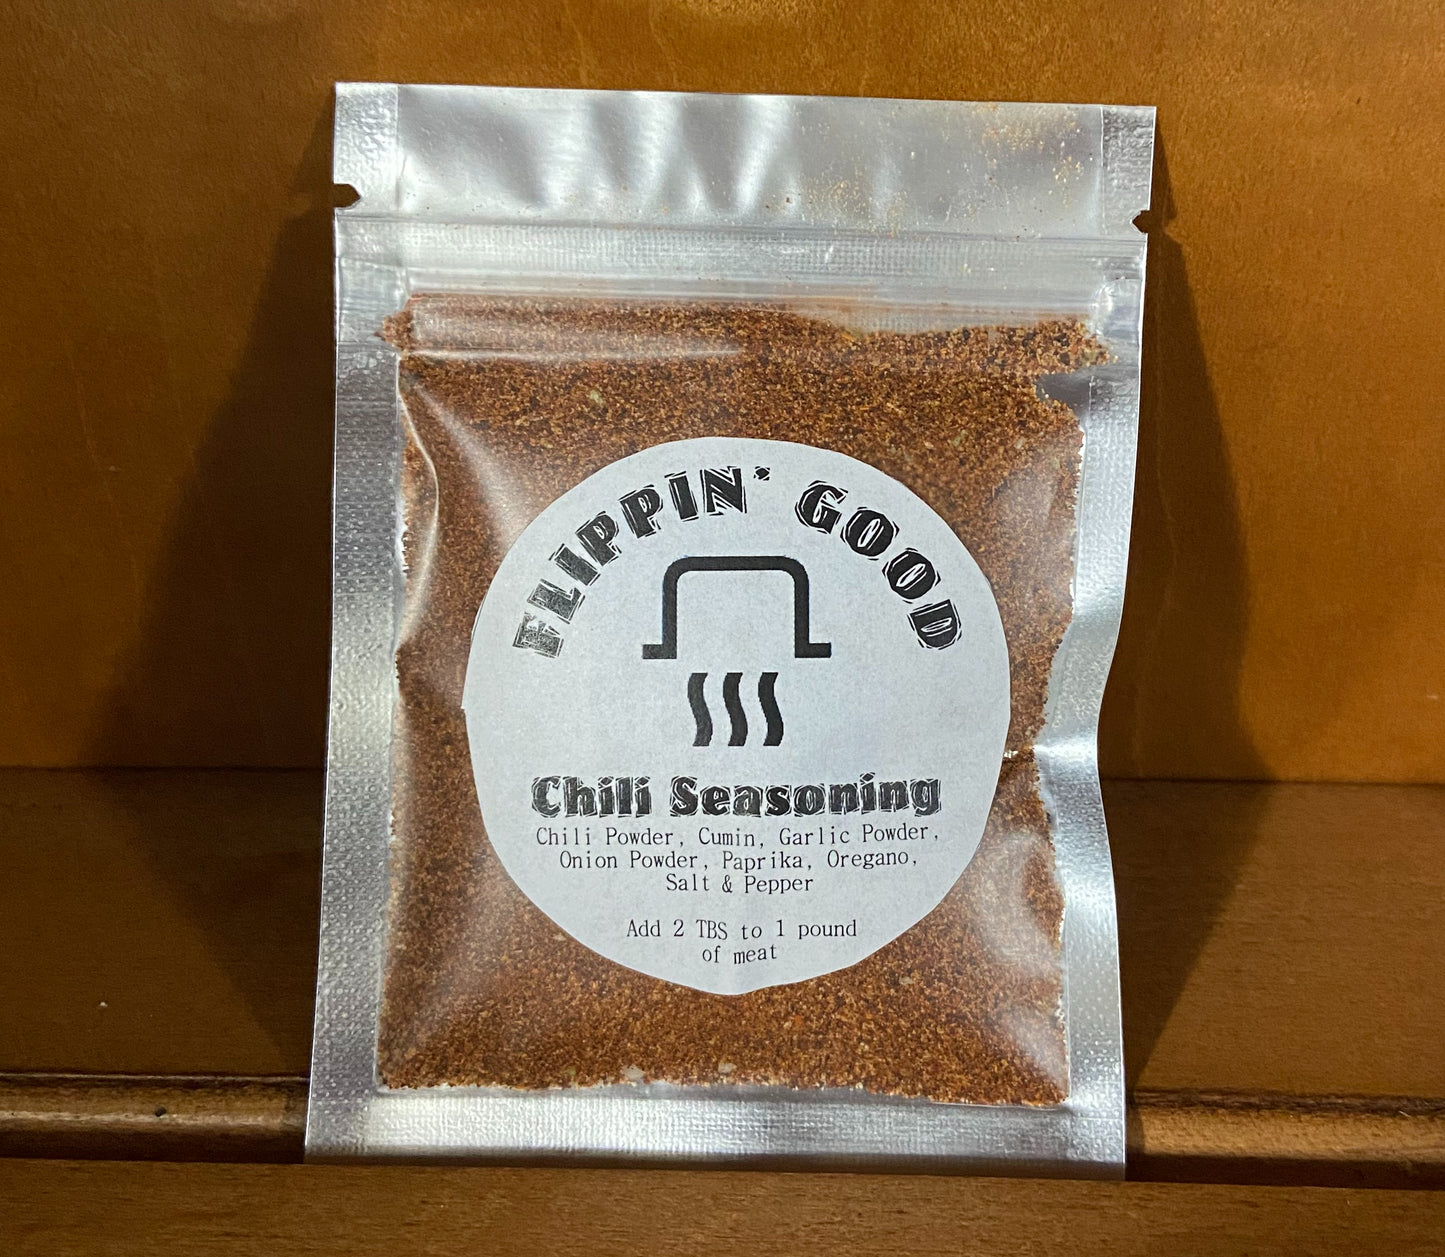 Flippin’ Good Chili Seasoning